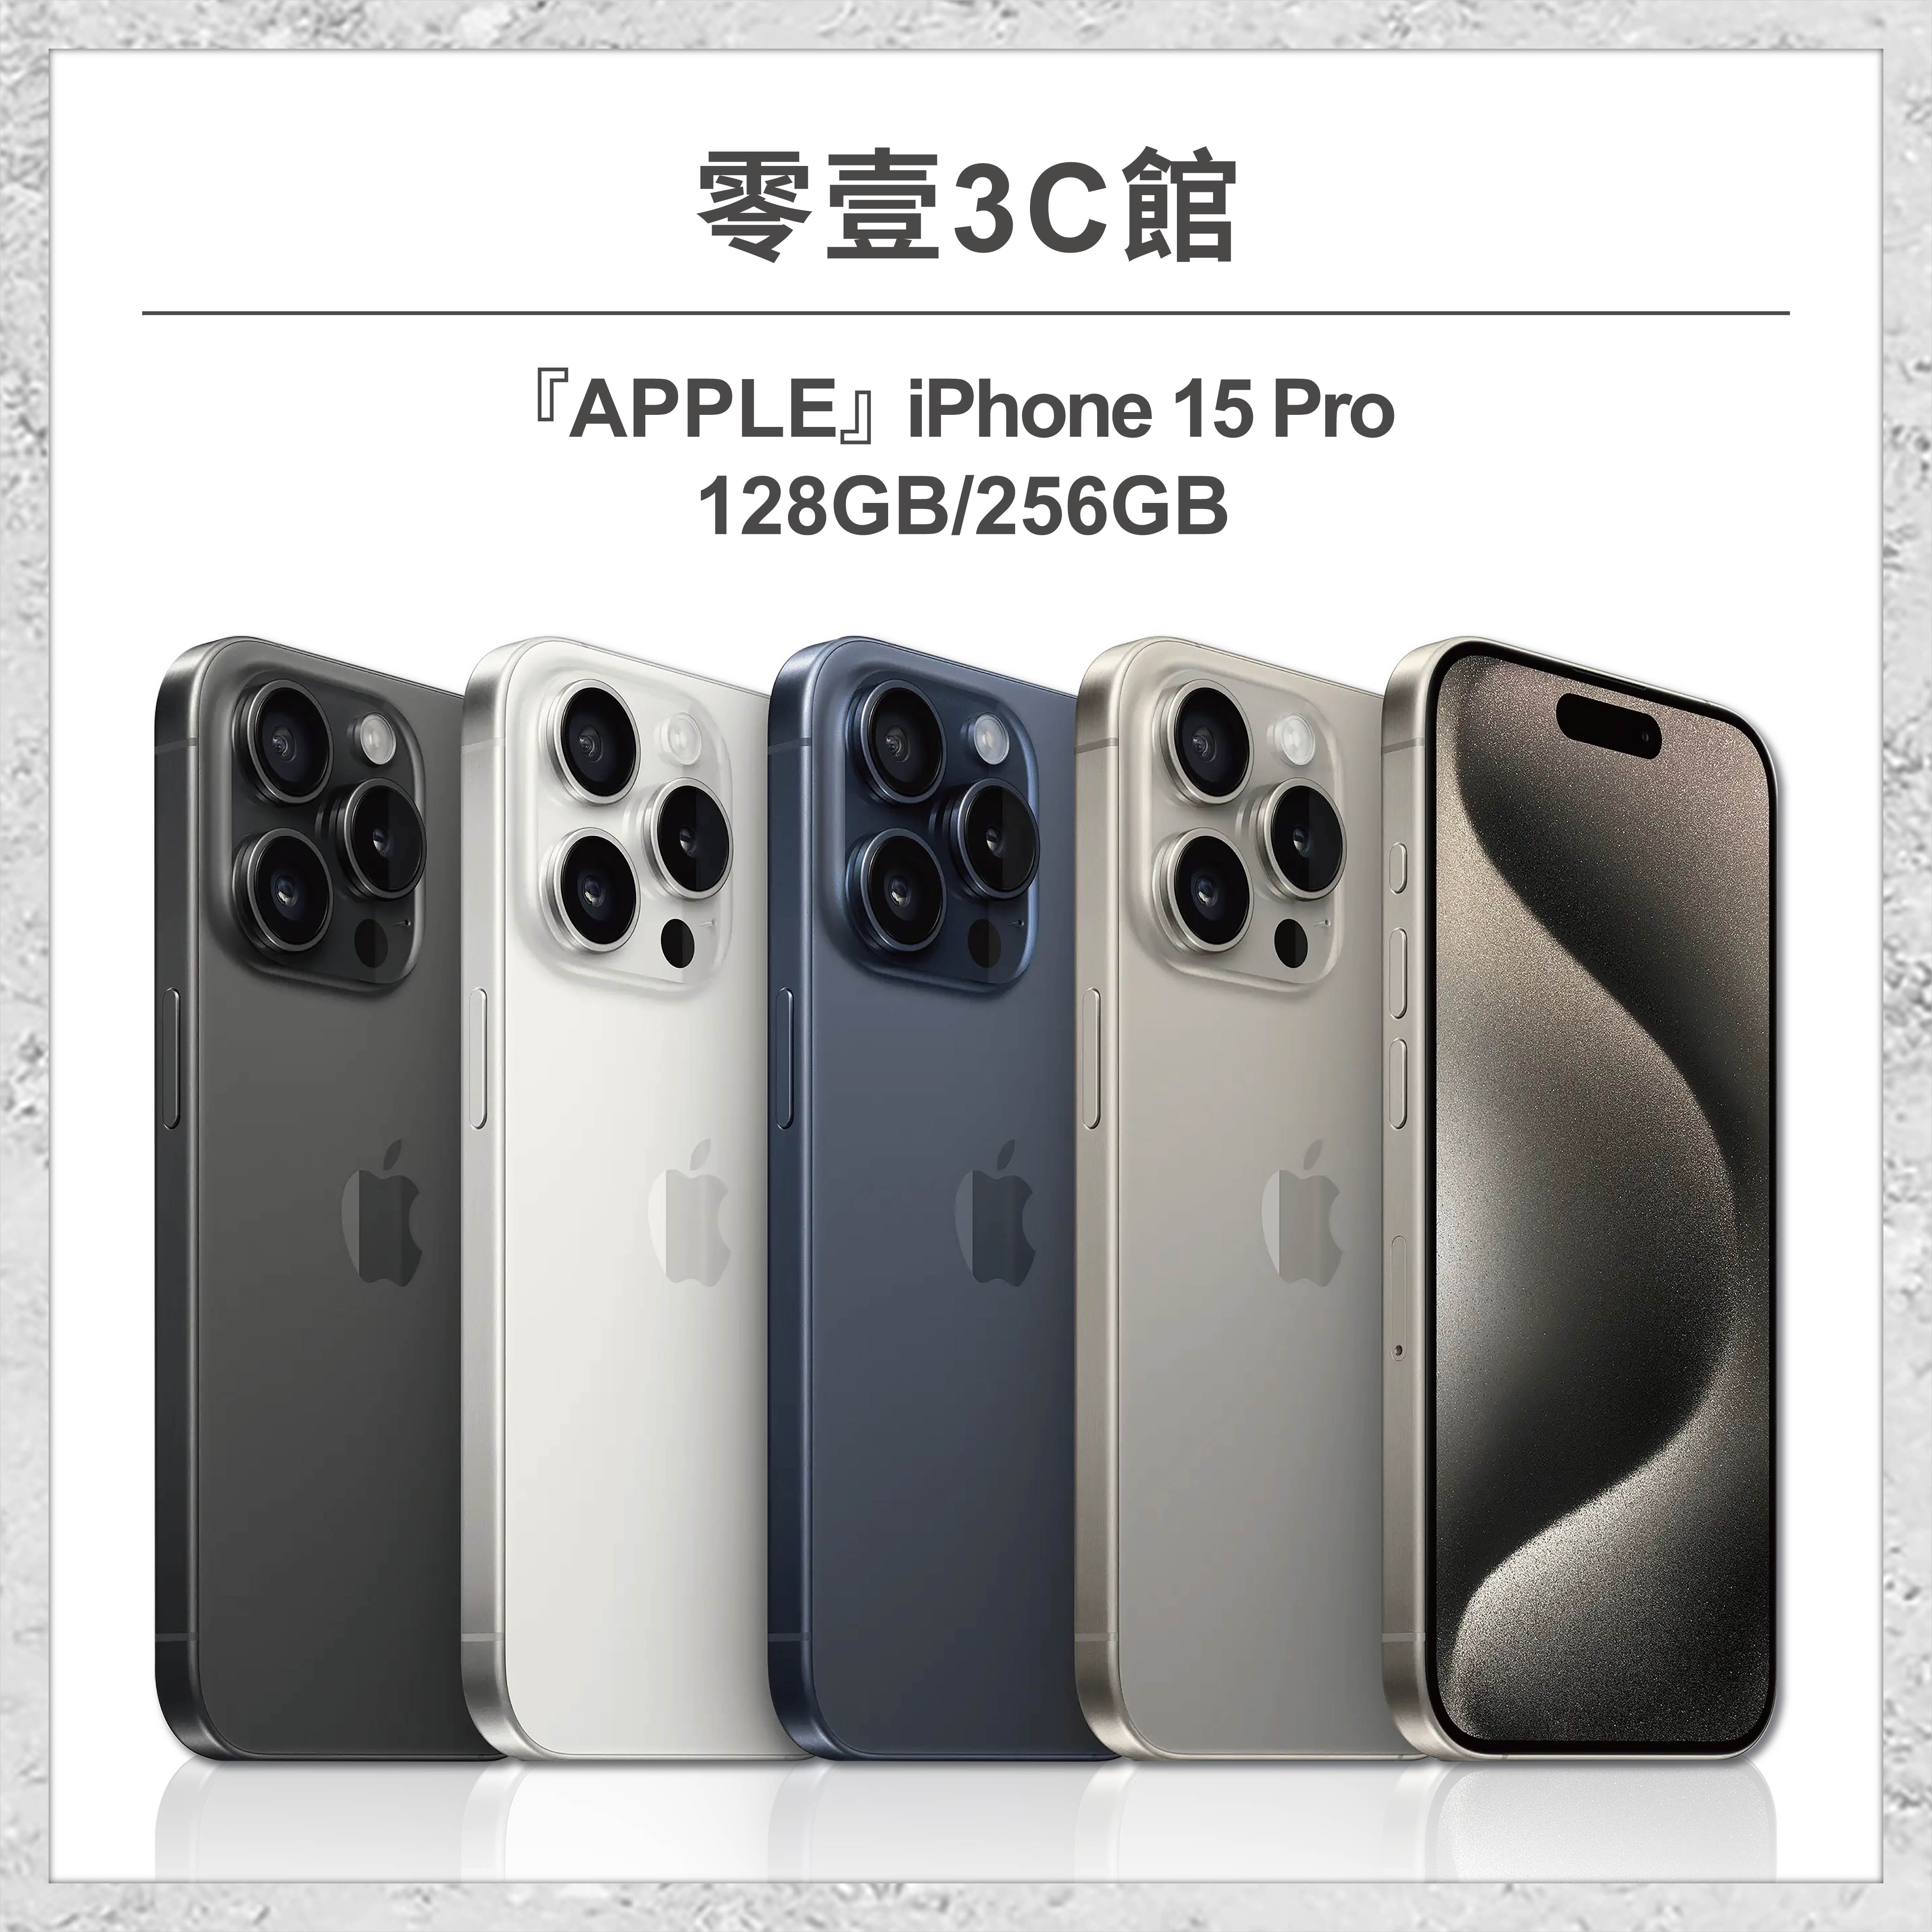 【Apple】iPhone 15 Pro 128GB/256GB 6.1吋 全新手機 智慧型手機 原廠保固1年